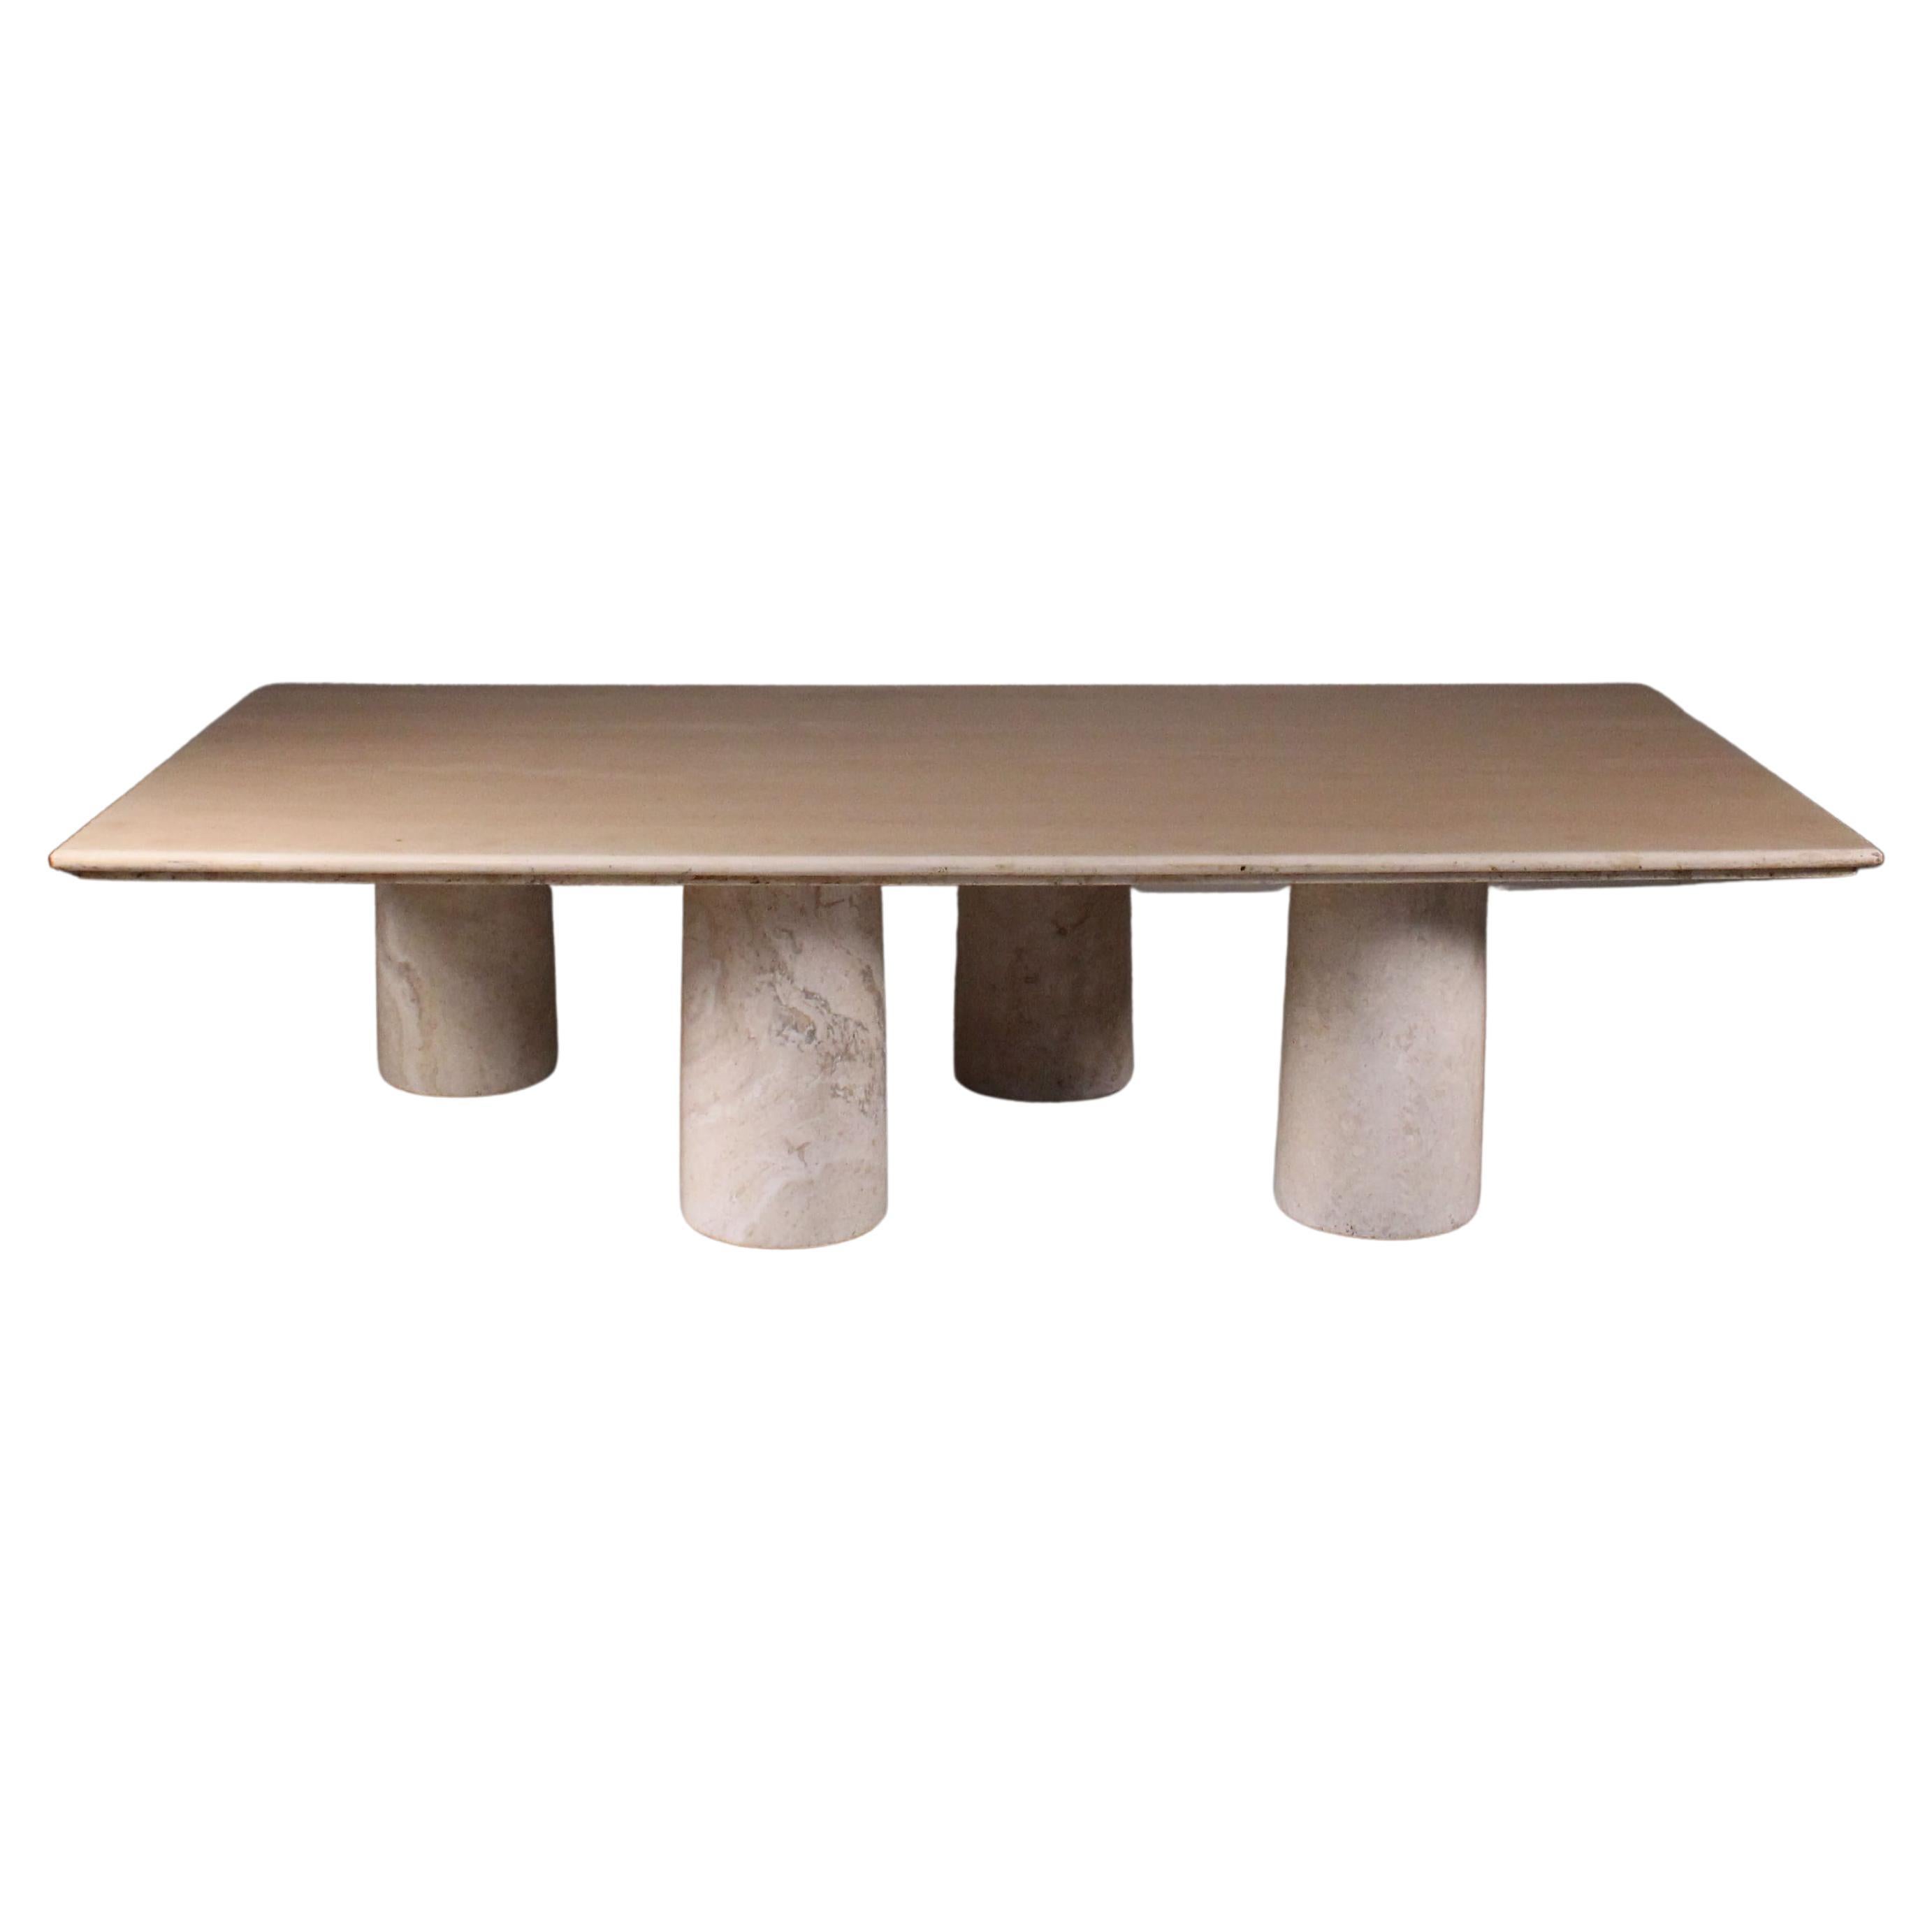  Table basse en marbre à colonnades, Mario Bellini, Cassina, 1969